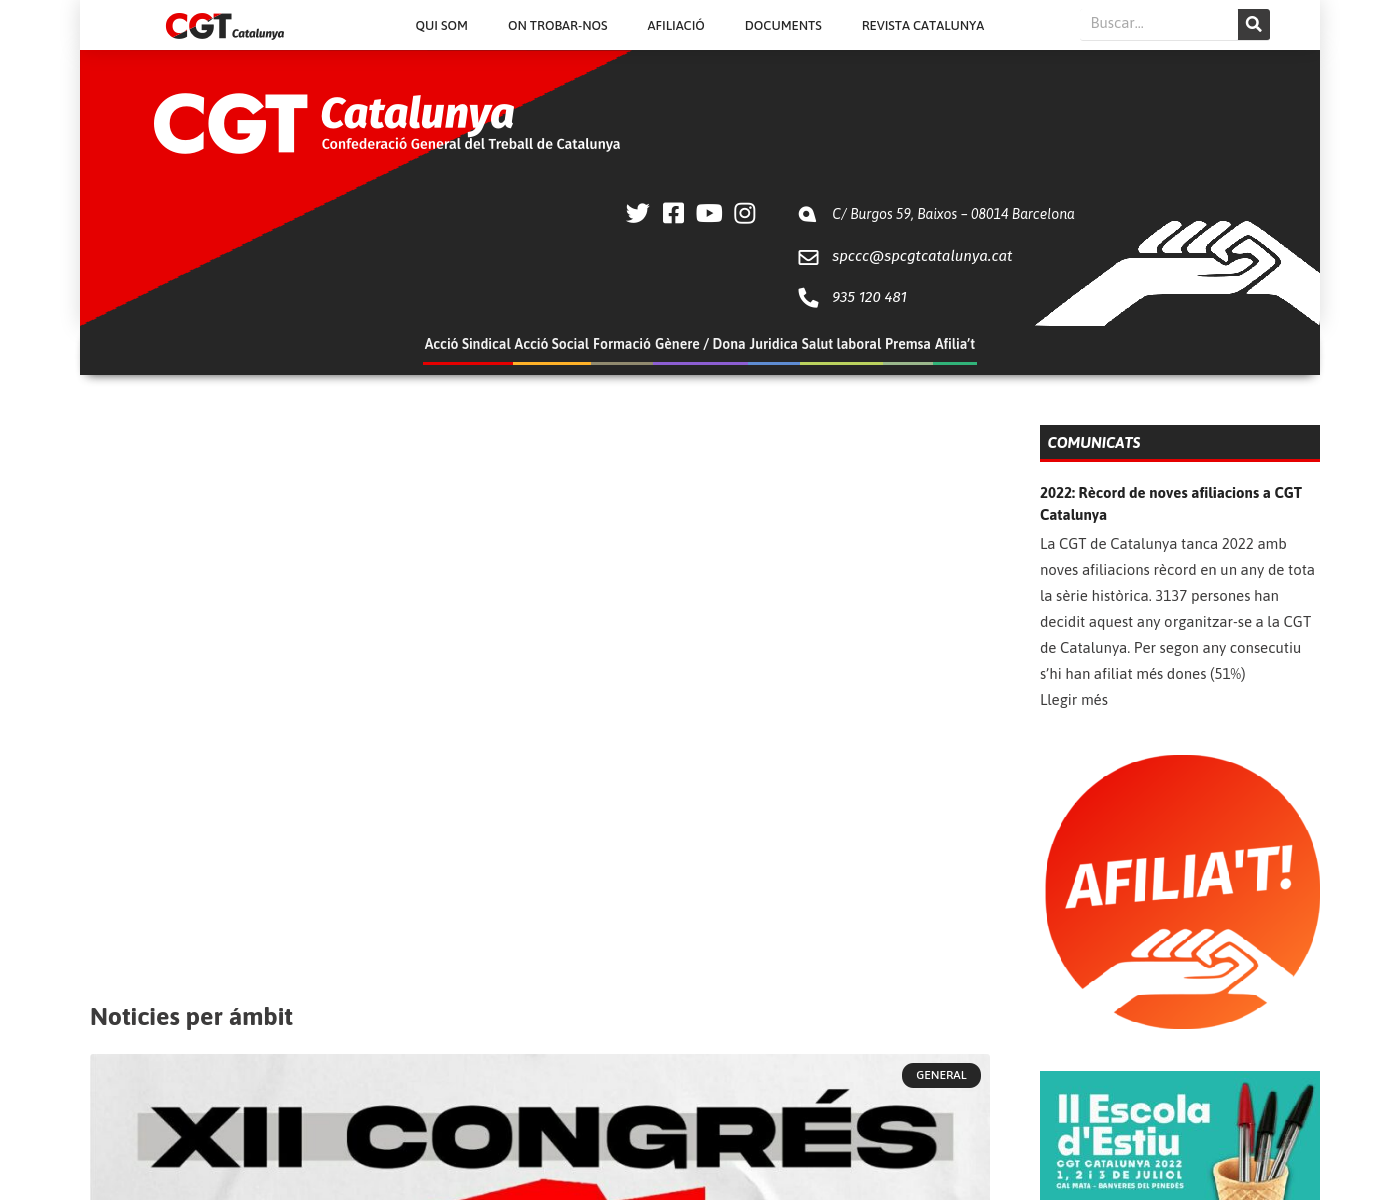 Confederació General del Treball de Catalunya (...)